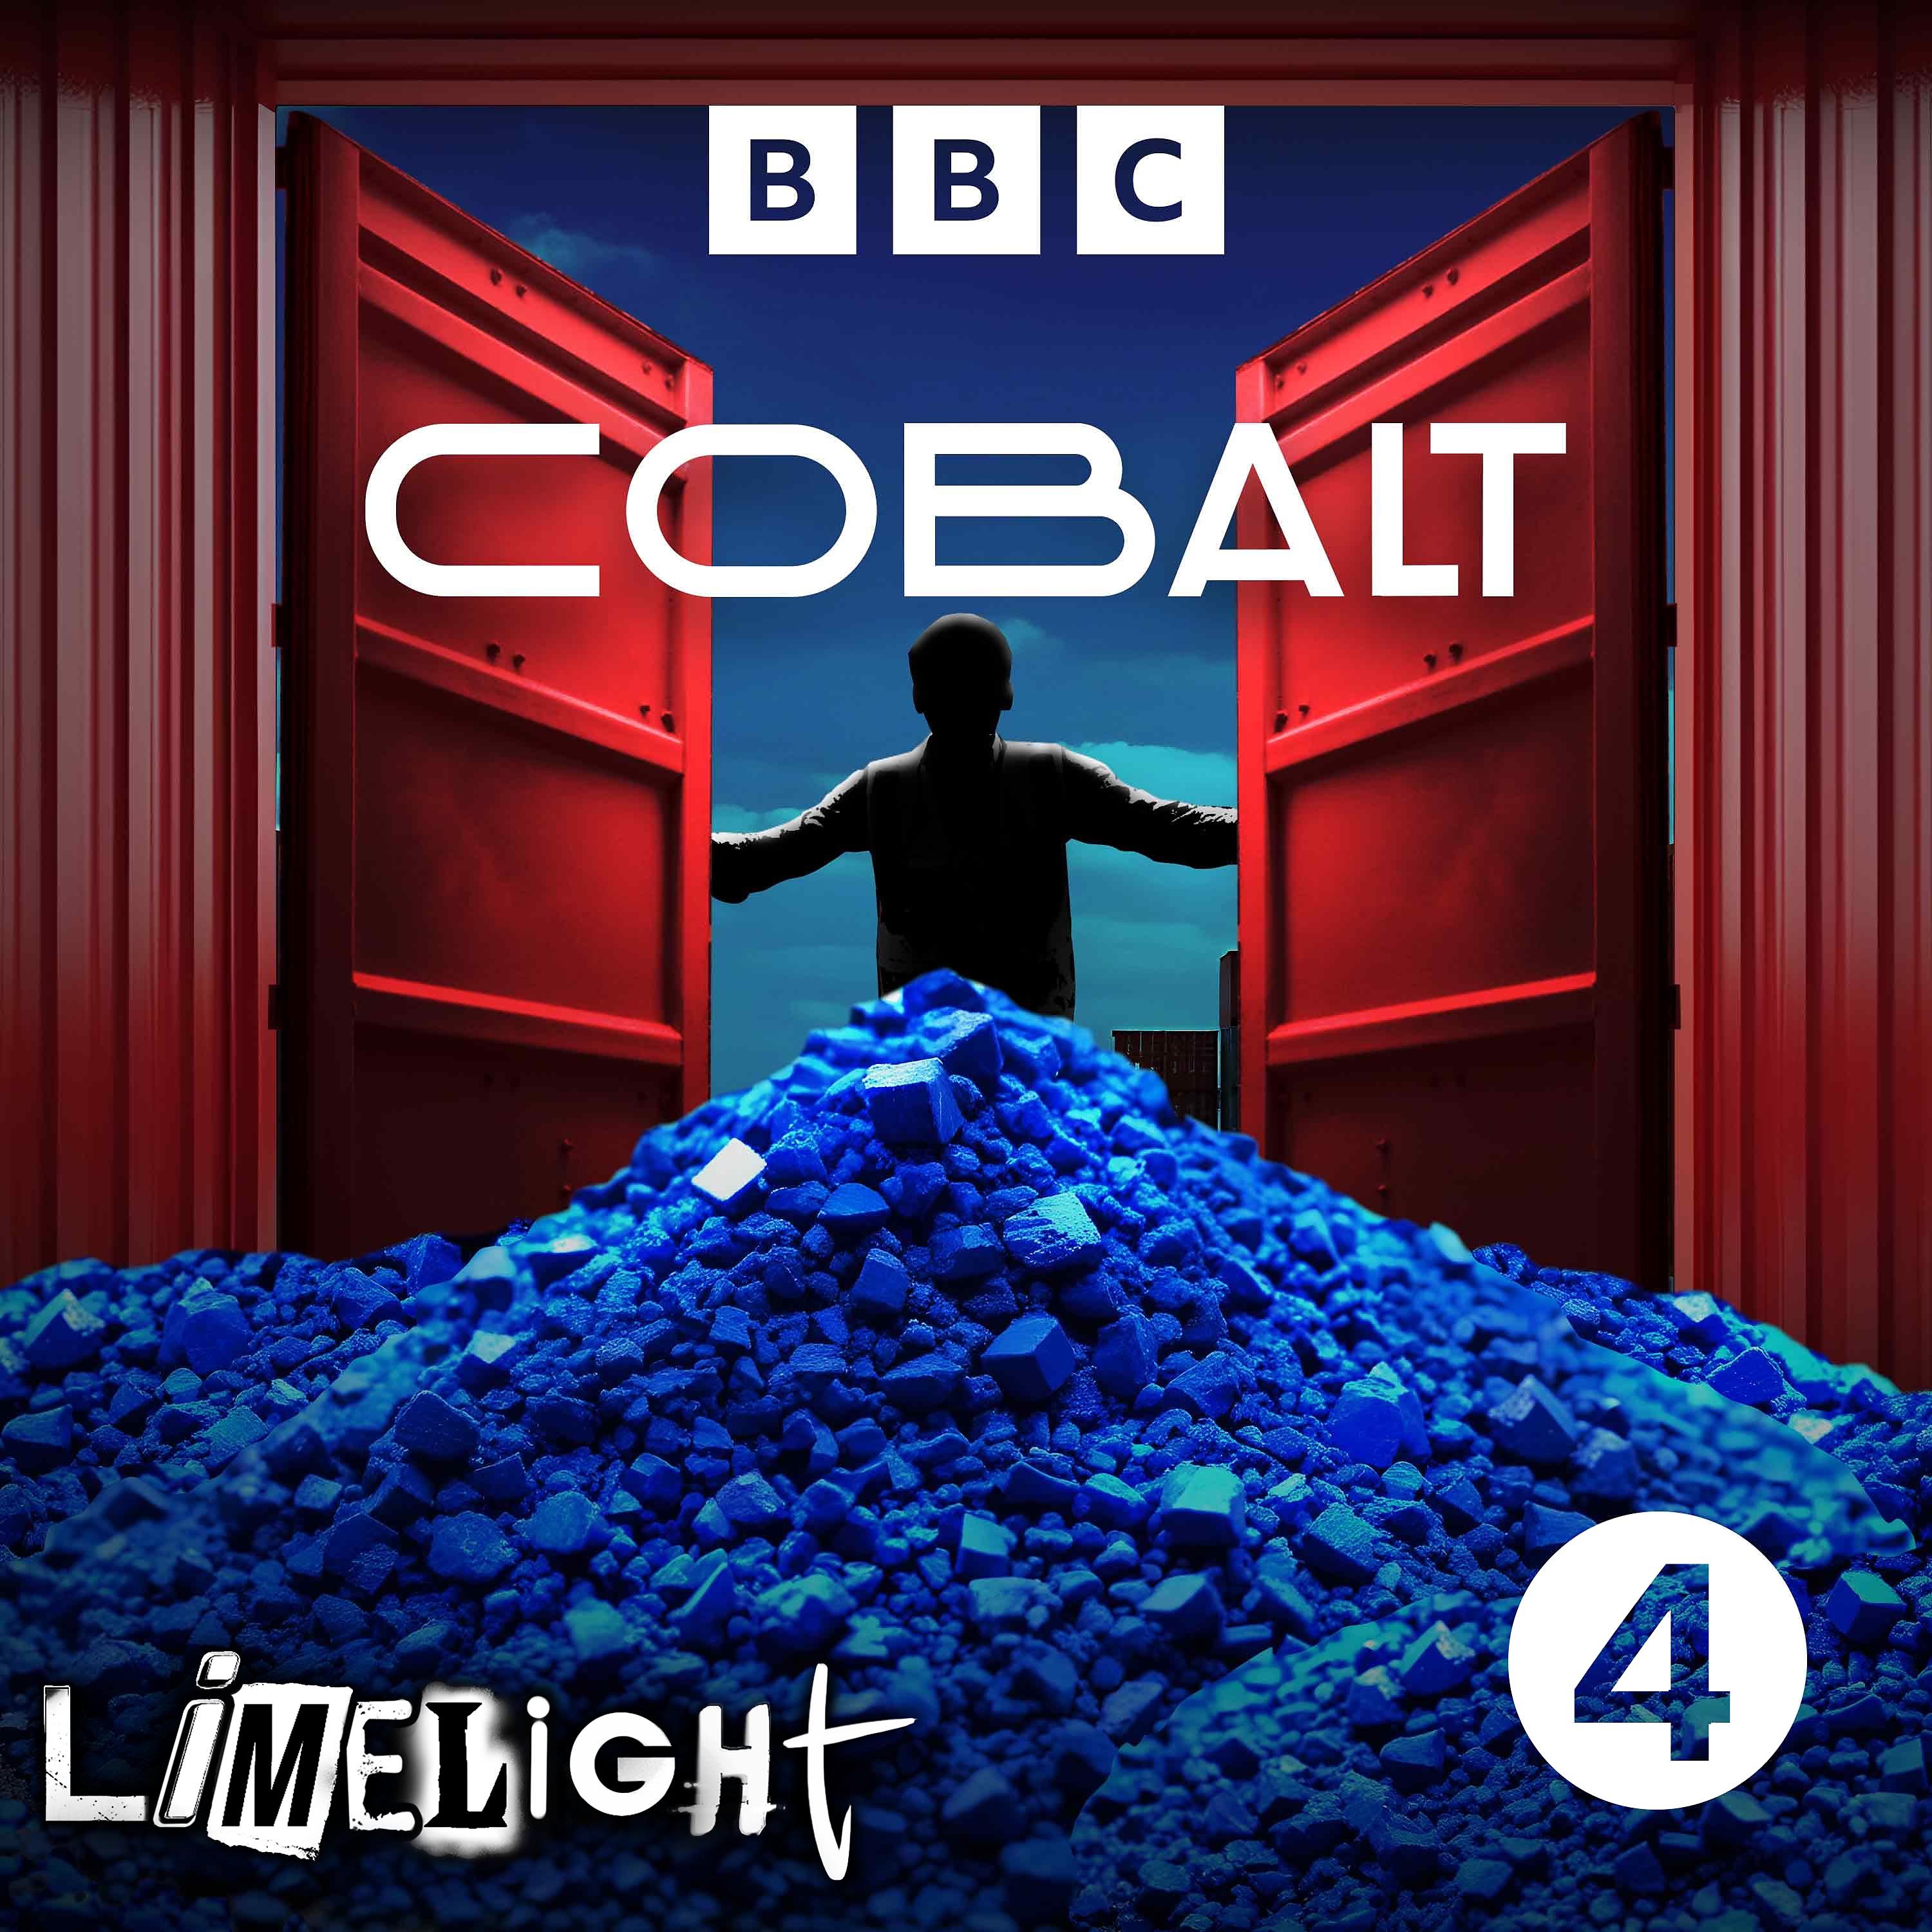 Introducing Cobalt